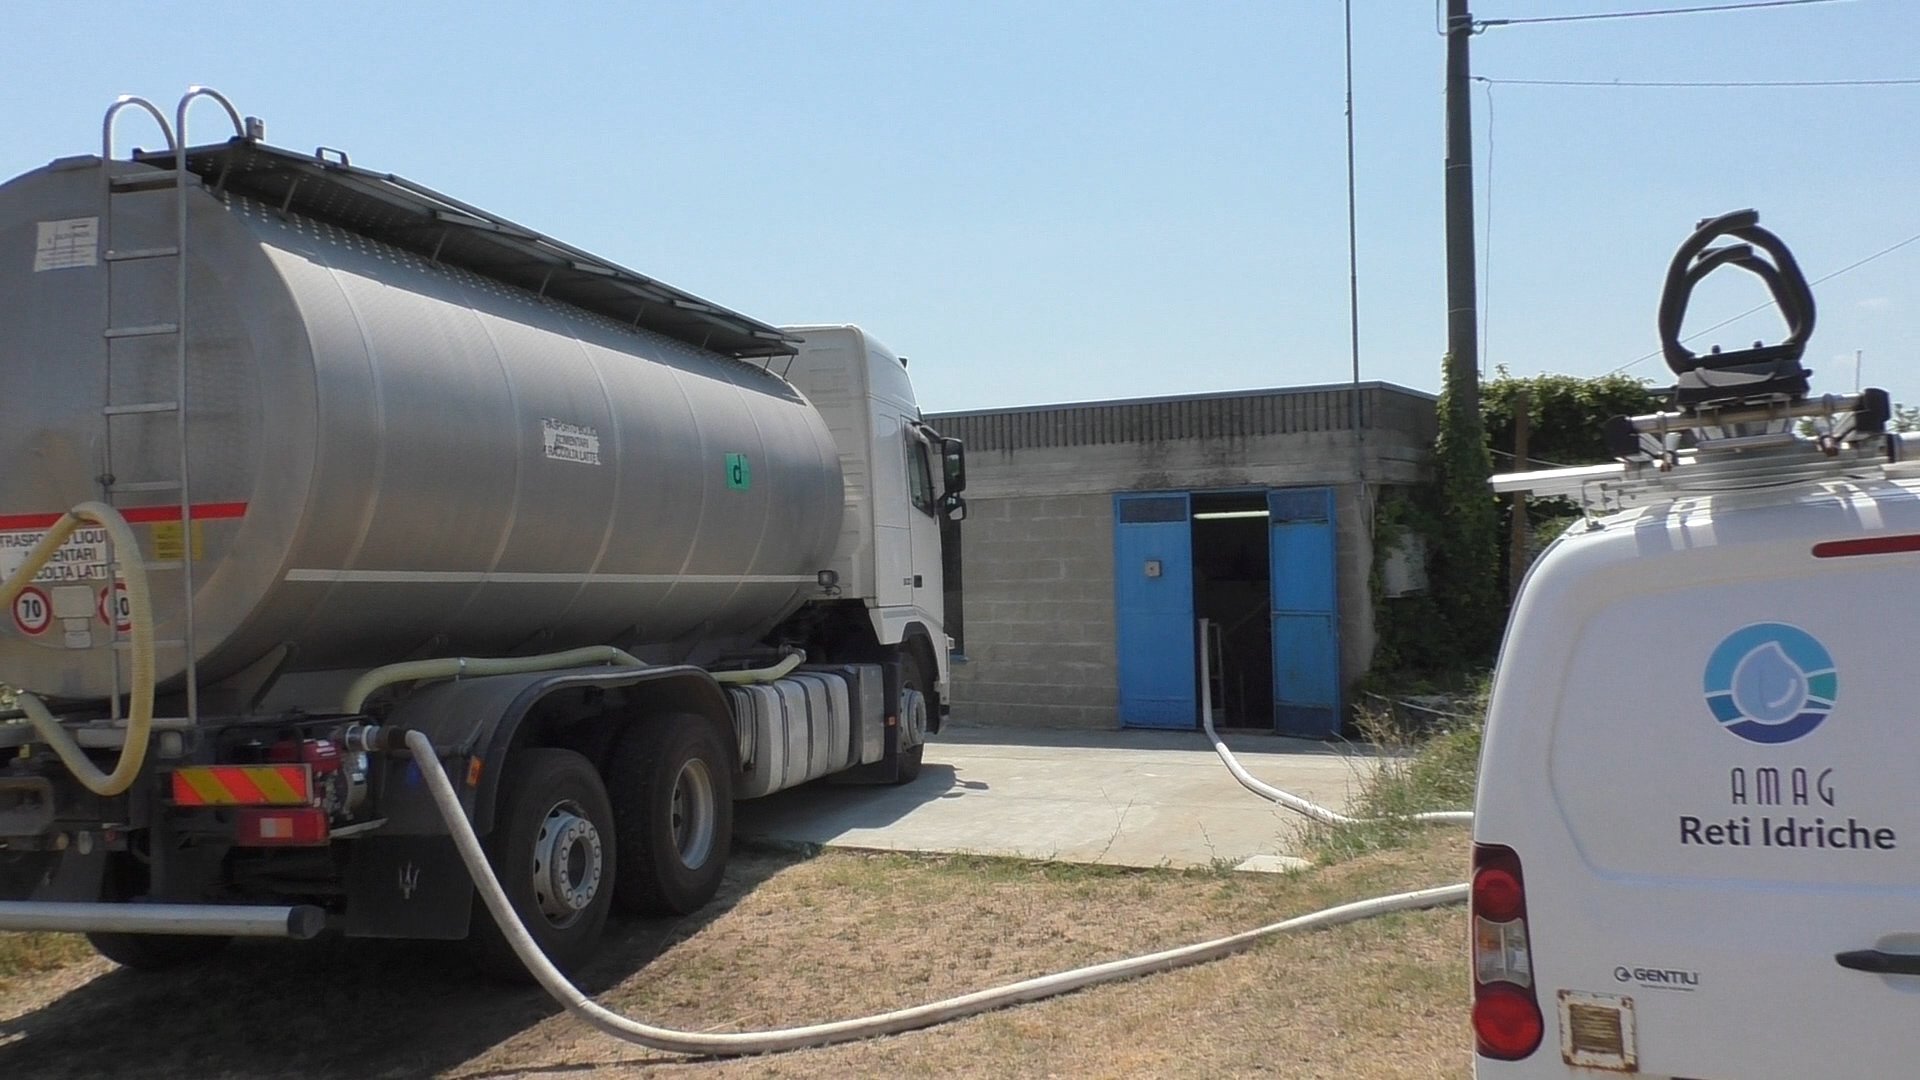 Emergenza idrica in provincia, Perissinotto (Amag): “Rafforzato il servizio di autobotti”